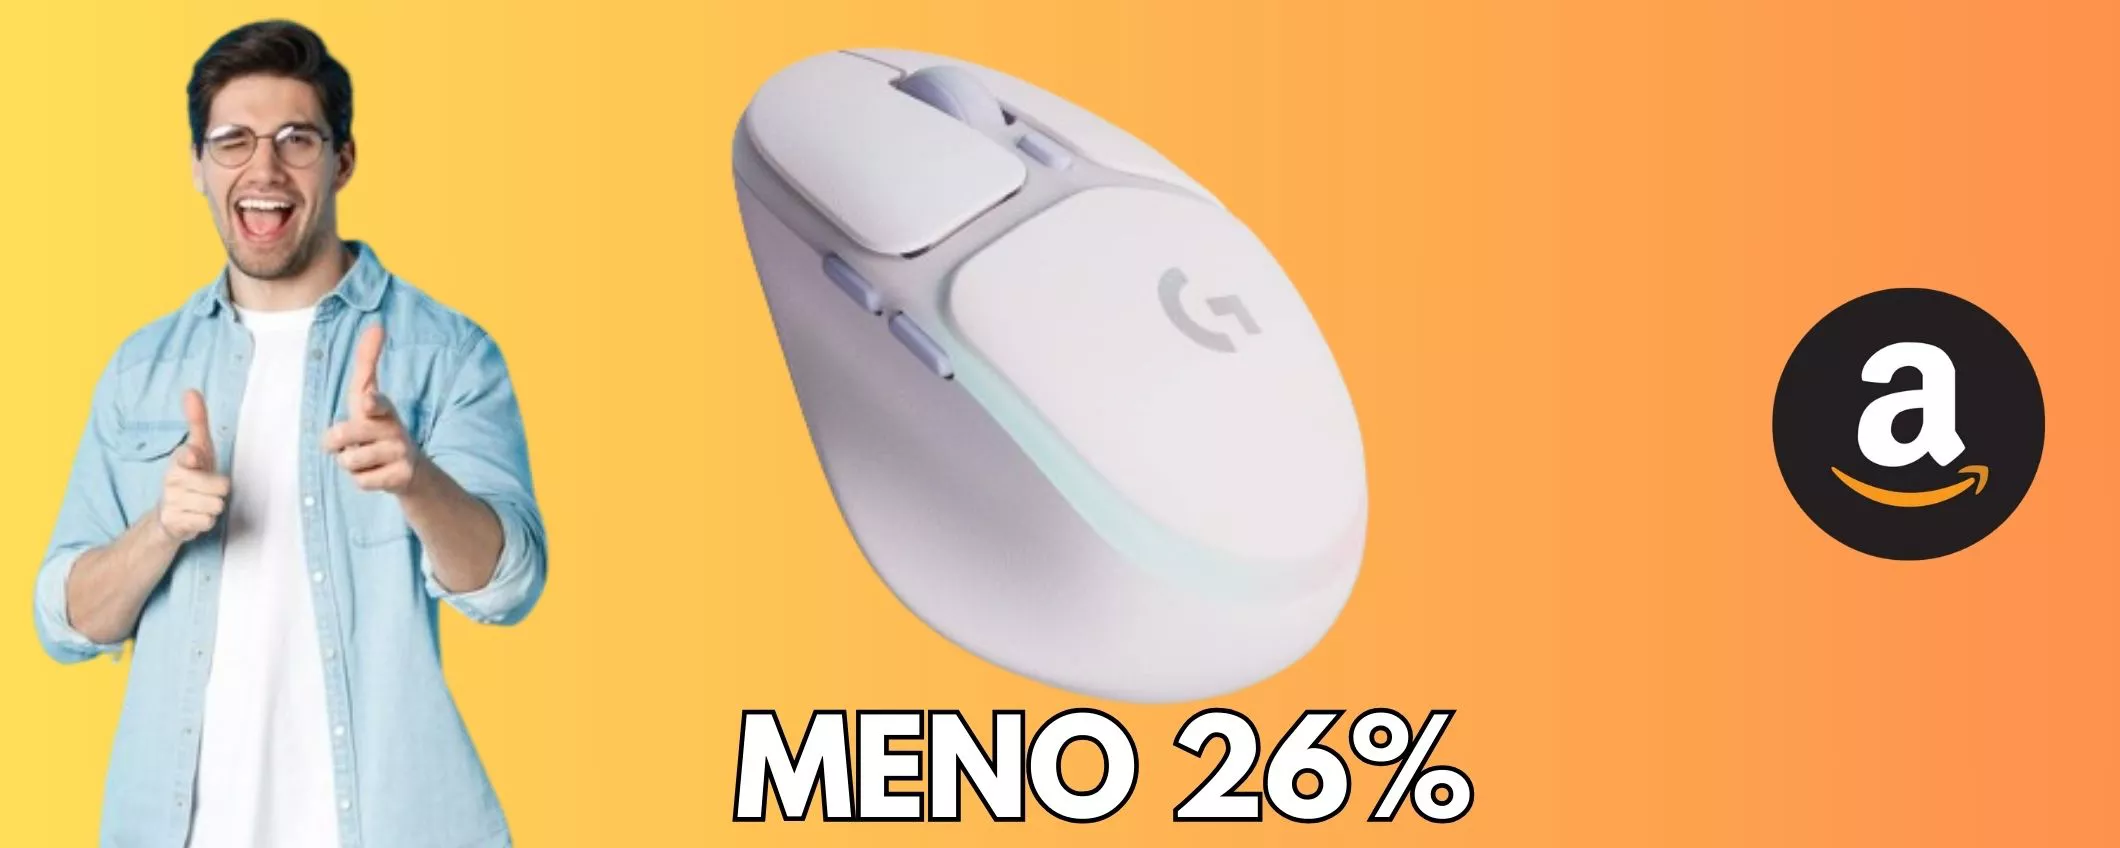 Logitech G G705 mouse gaming, il prezzo crolla: MENO 26 PER CENTO